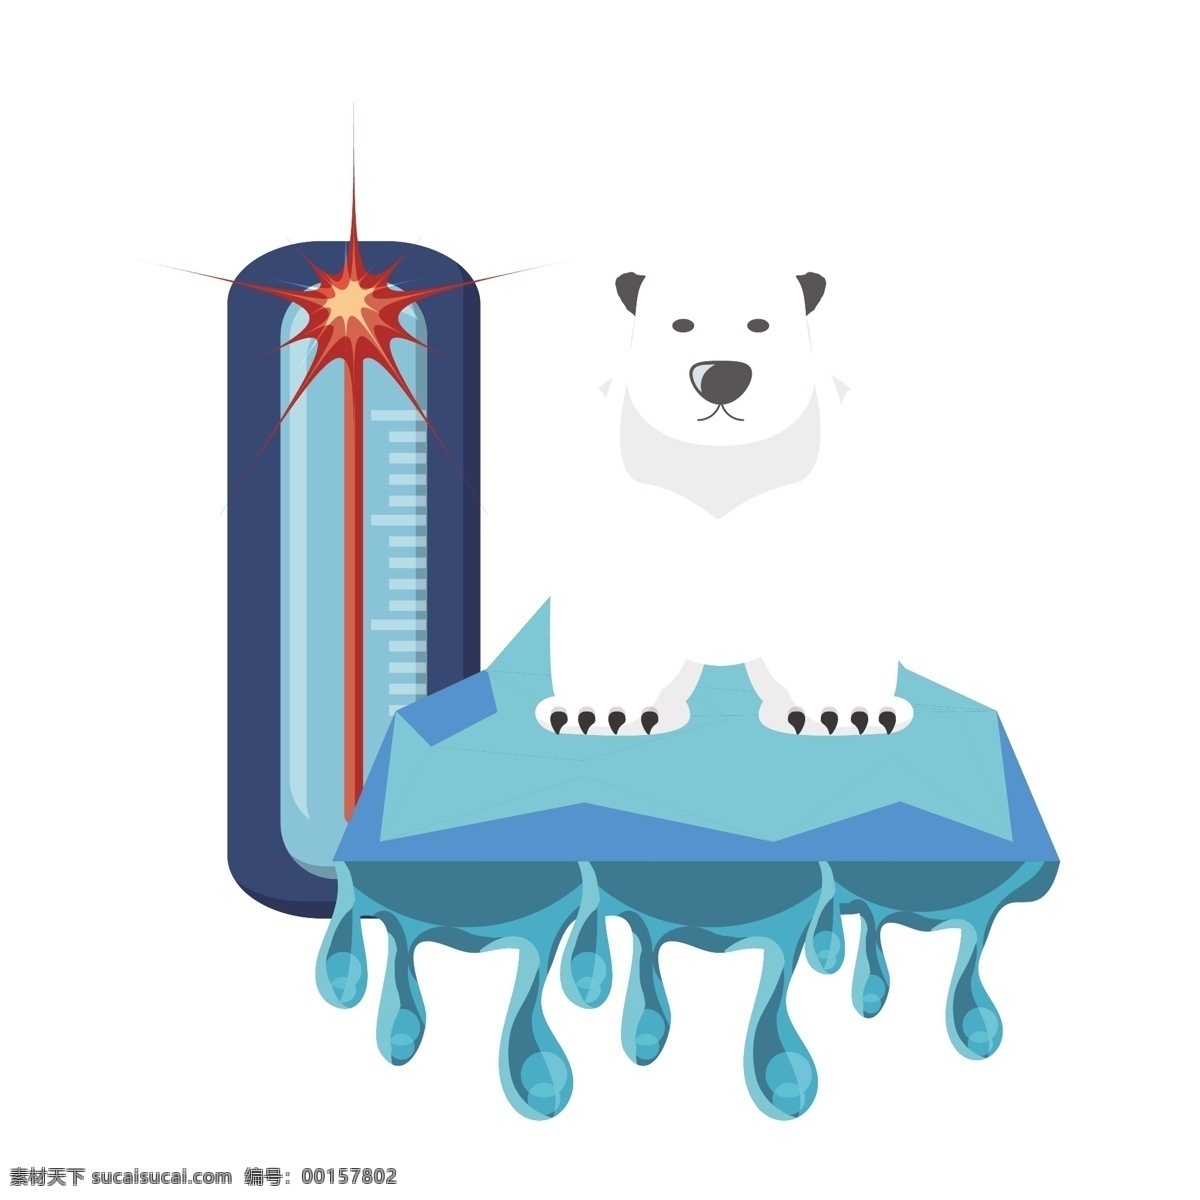 全球 变 暖 警示 矢量 变暖 全球变暖 卡通 卡通北极熊 可怜 可怜的北极熊 灾害 自然灾害 温度升高 气候变暖